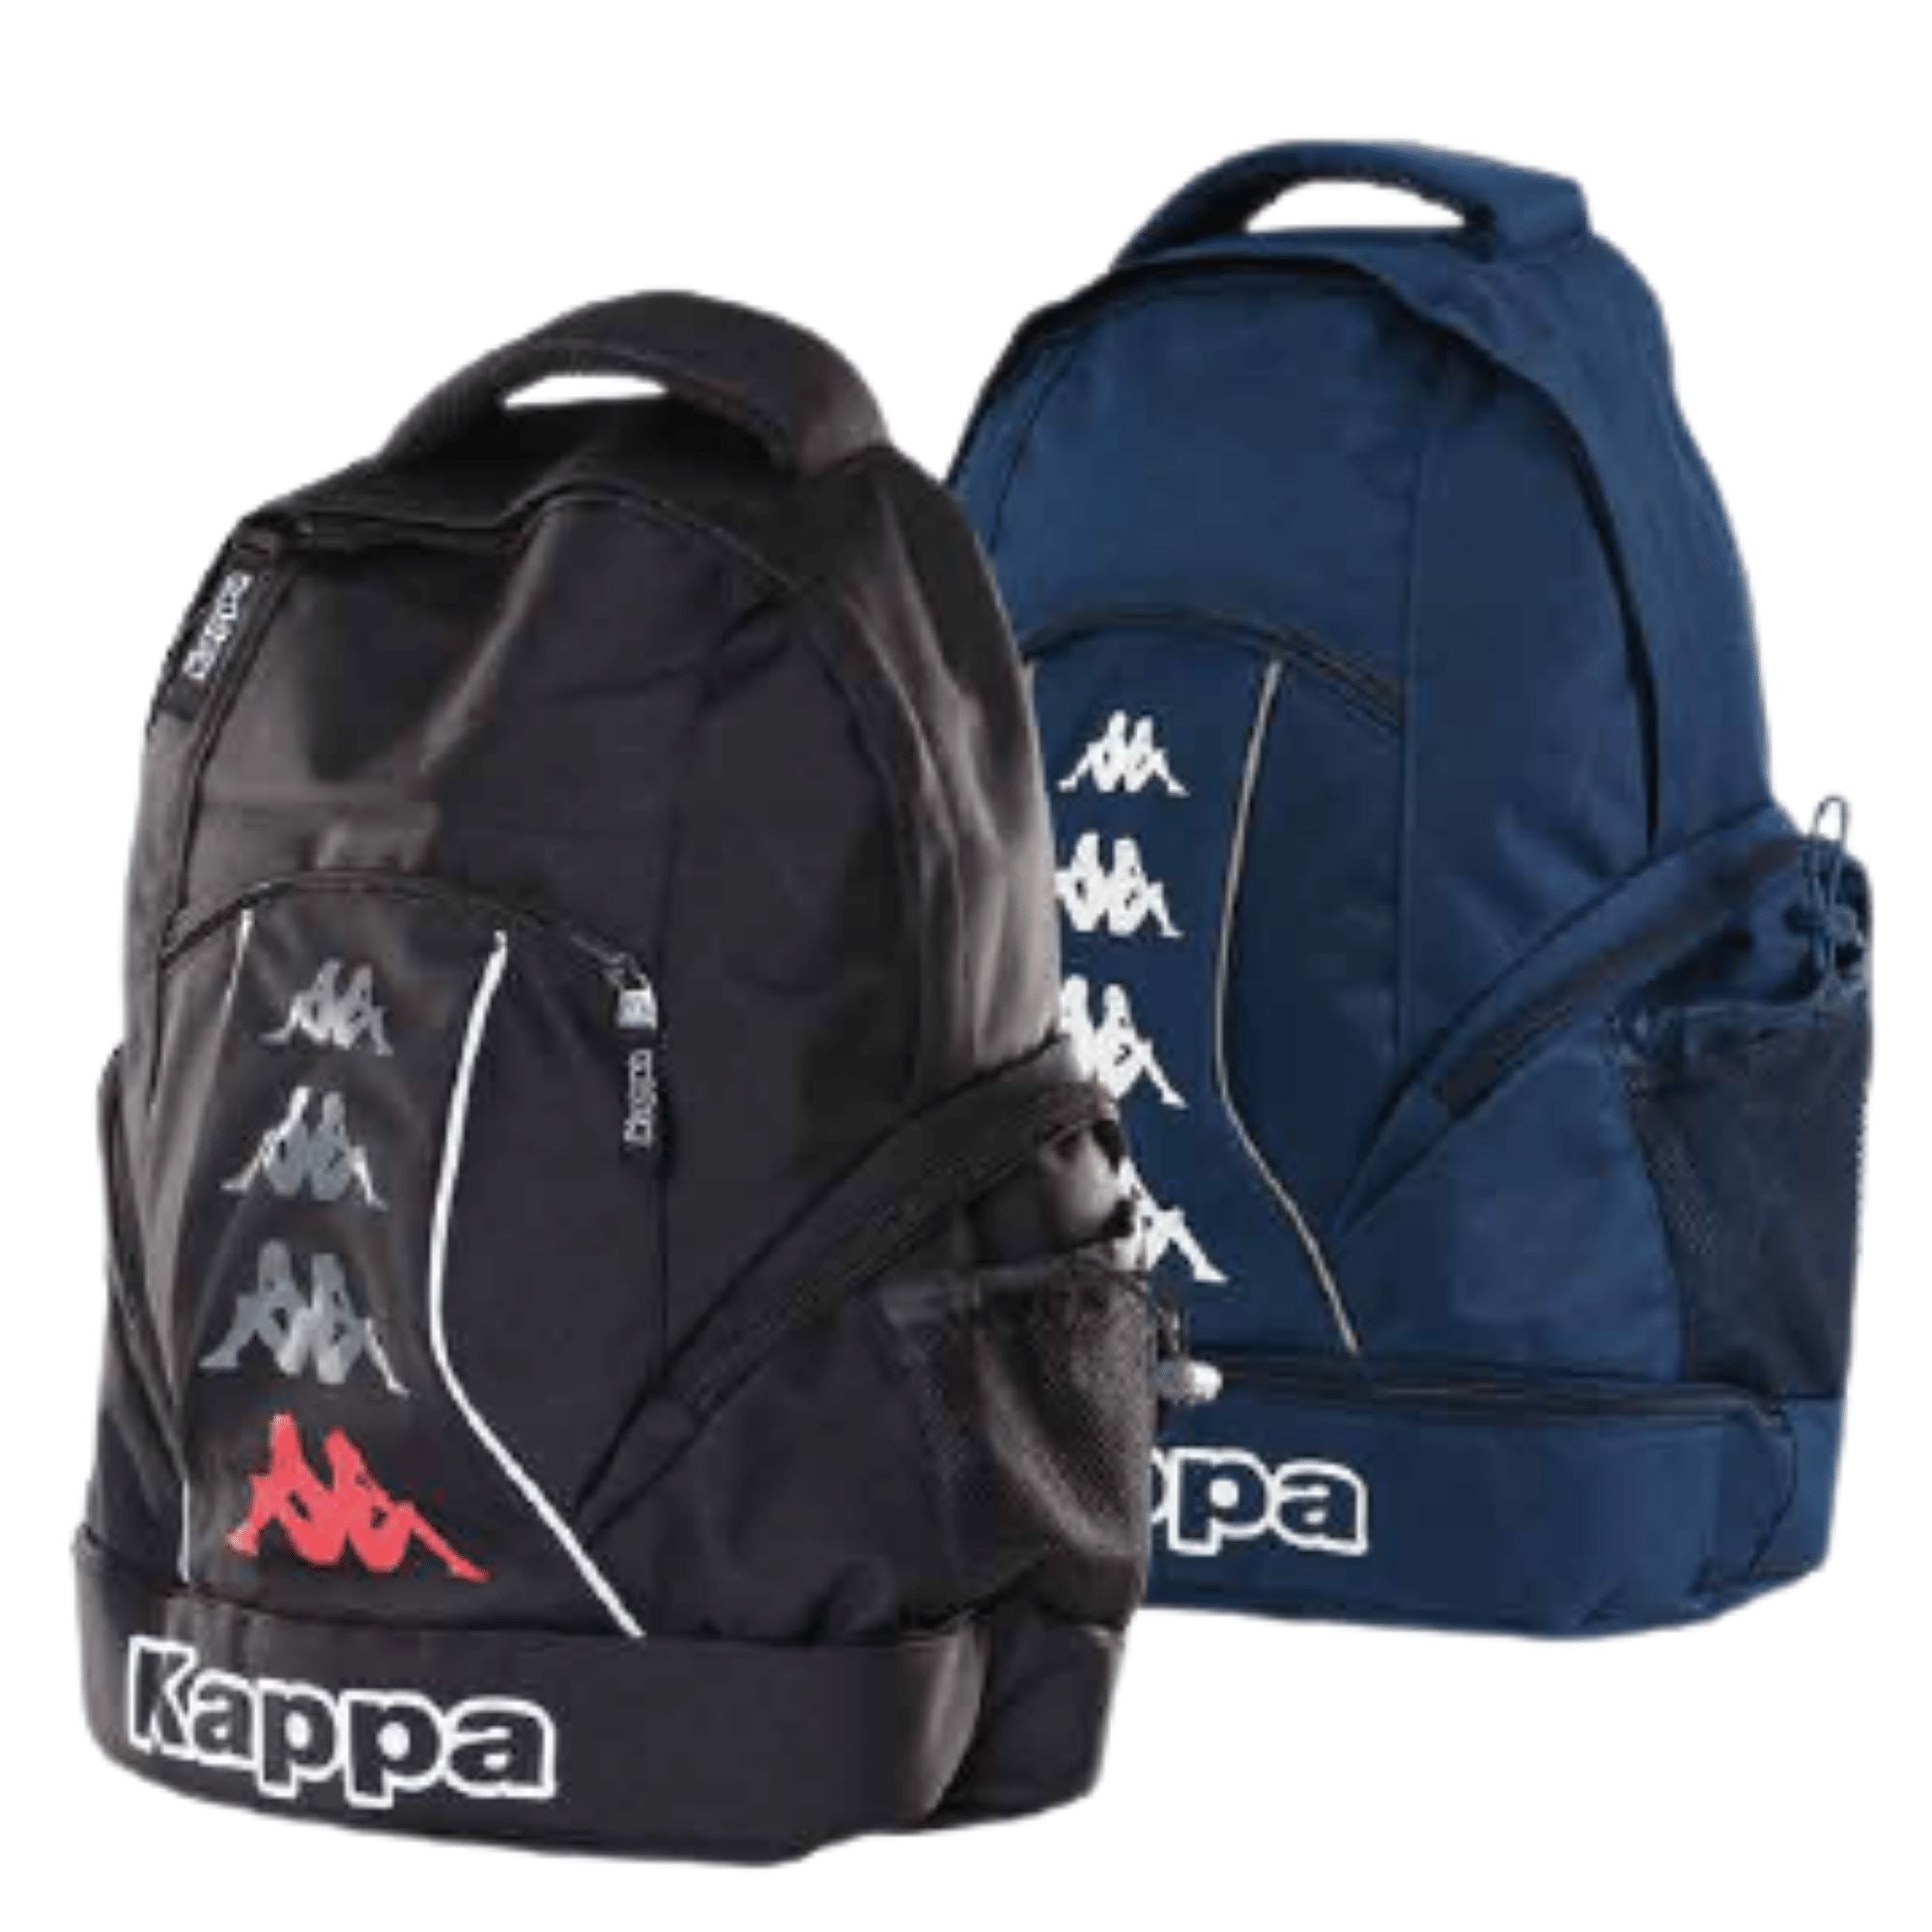 Kappa Backpack Medium - ITASPORT